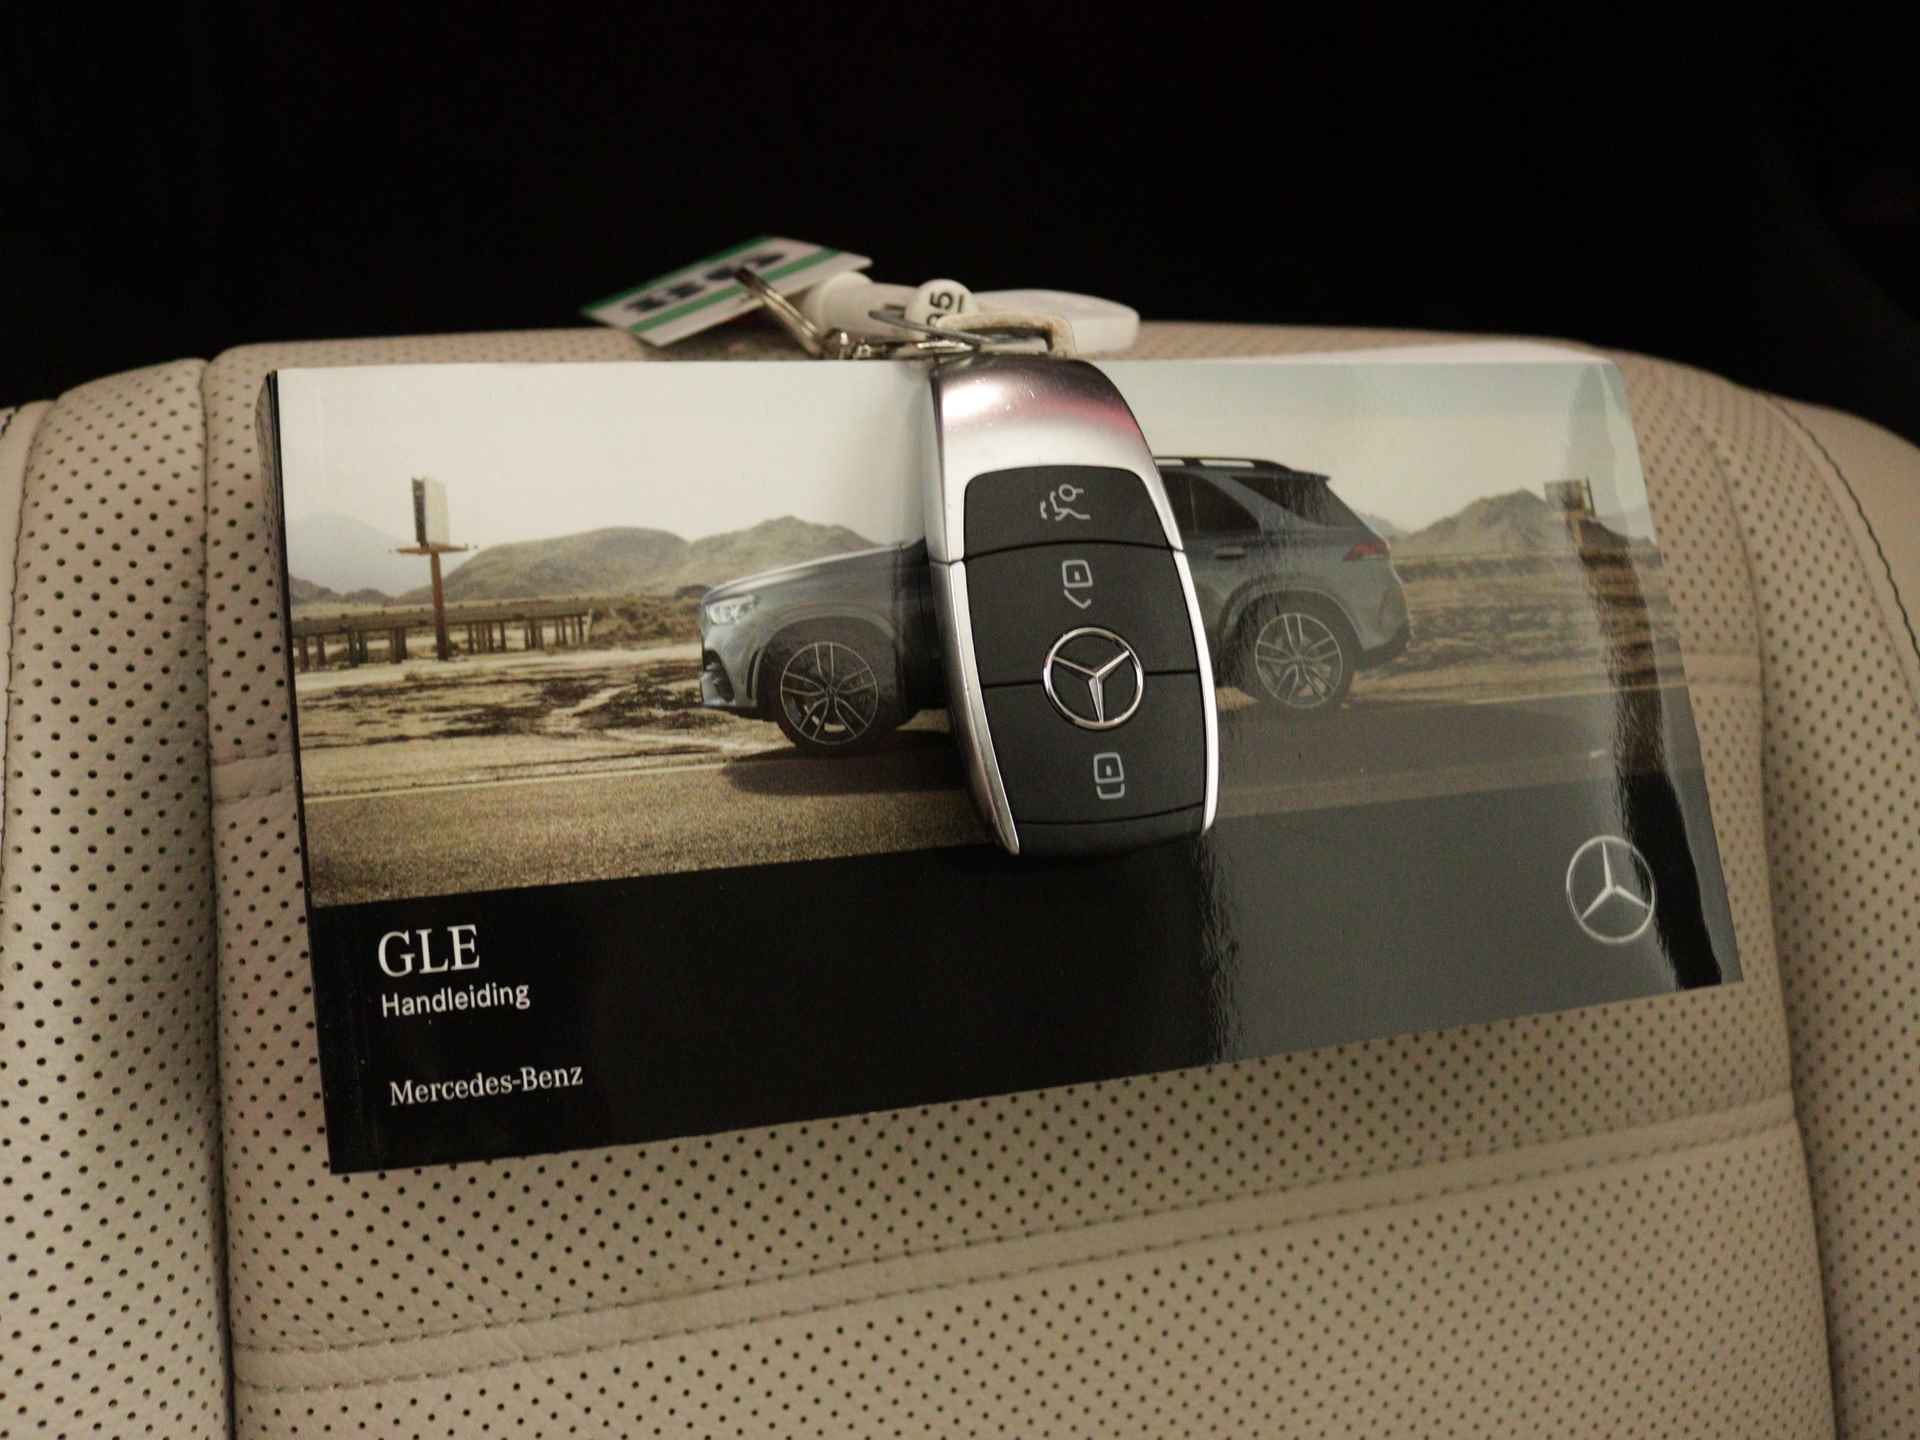 Mercedes-Benz GLE 450 4MATIC AMG Line Premium | Panoramadak | Luchtvering | Burmester | Navigatie | MBUX wide screen | Alarm klasse 3 | Parking support | inclusief 24 maanden MB Certified garantie voor europa - 12/39